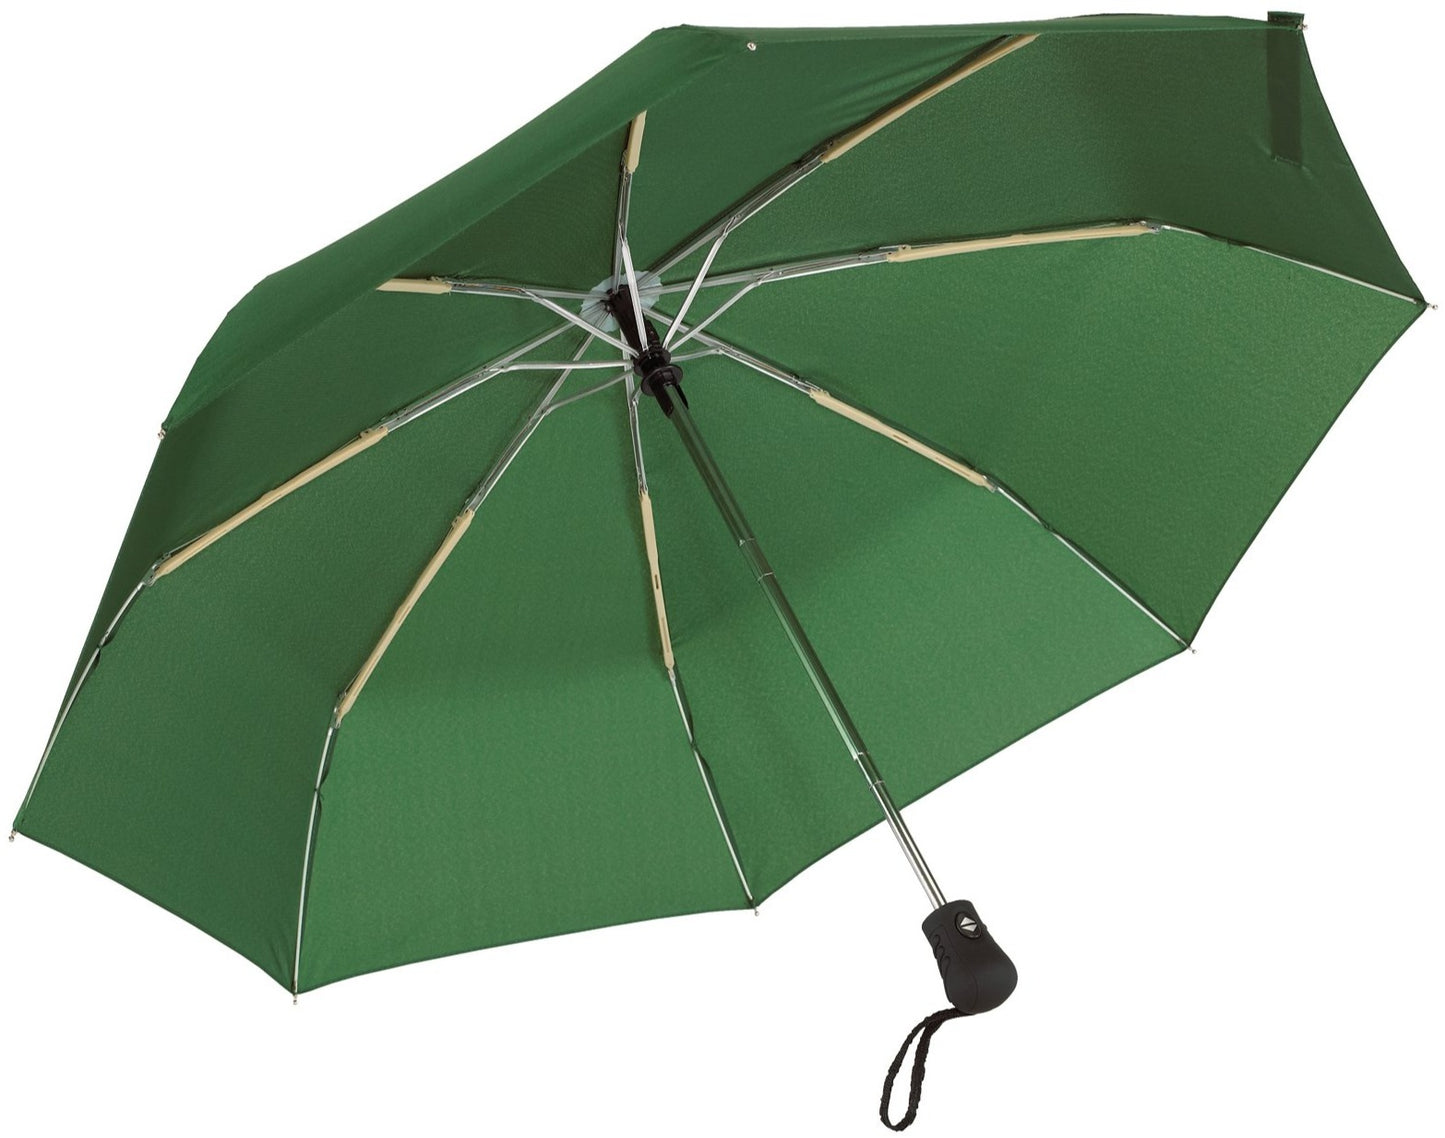 Πράσινη (μεσαίο) Ομπρέλα βροχής, μίνι, Αντιανεμική και Twinmatic (κωδικός 01-01-0200).